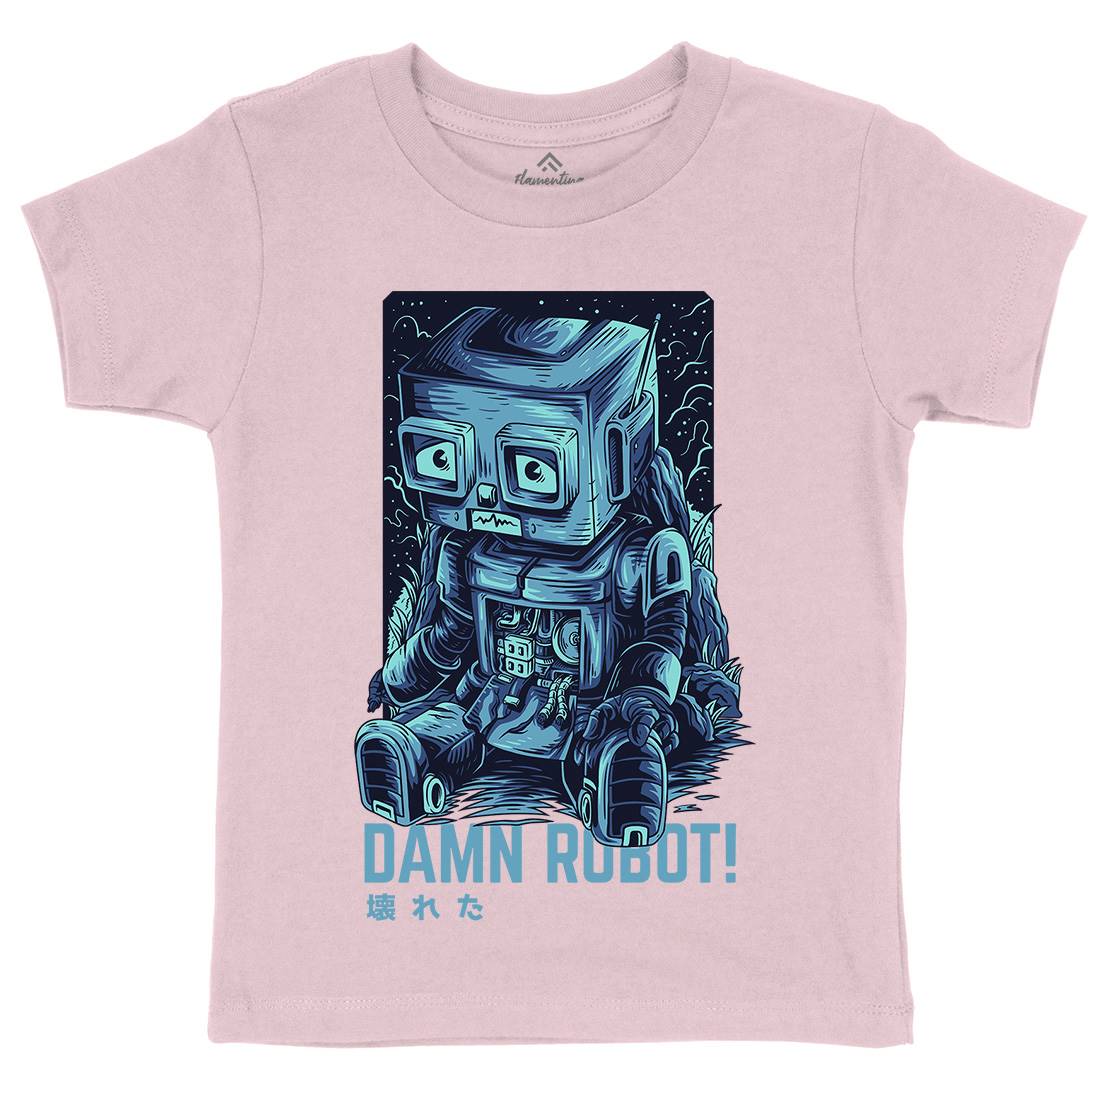 Damn Robot Kids Crew Neck T-Shirt Space D742